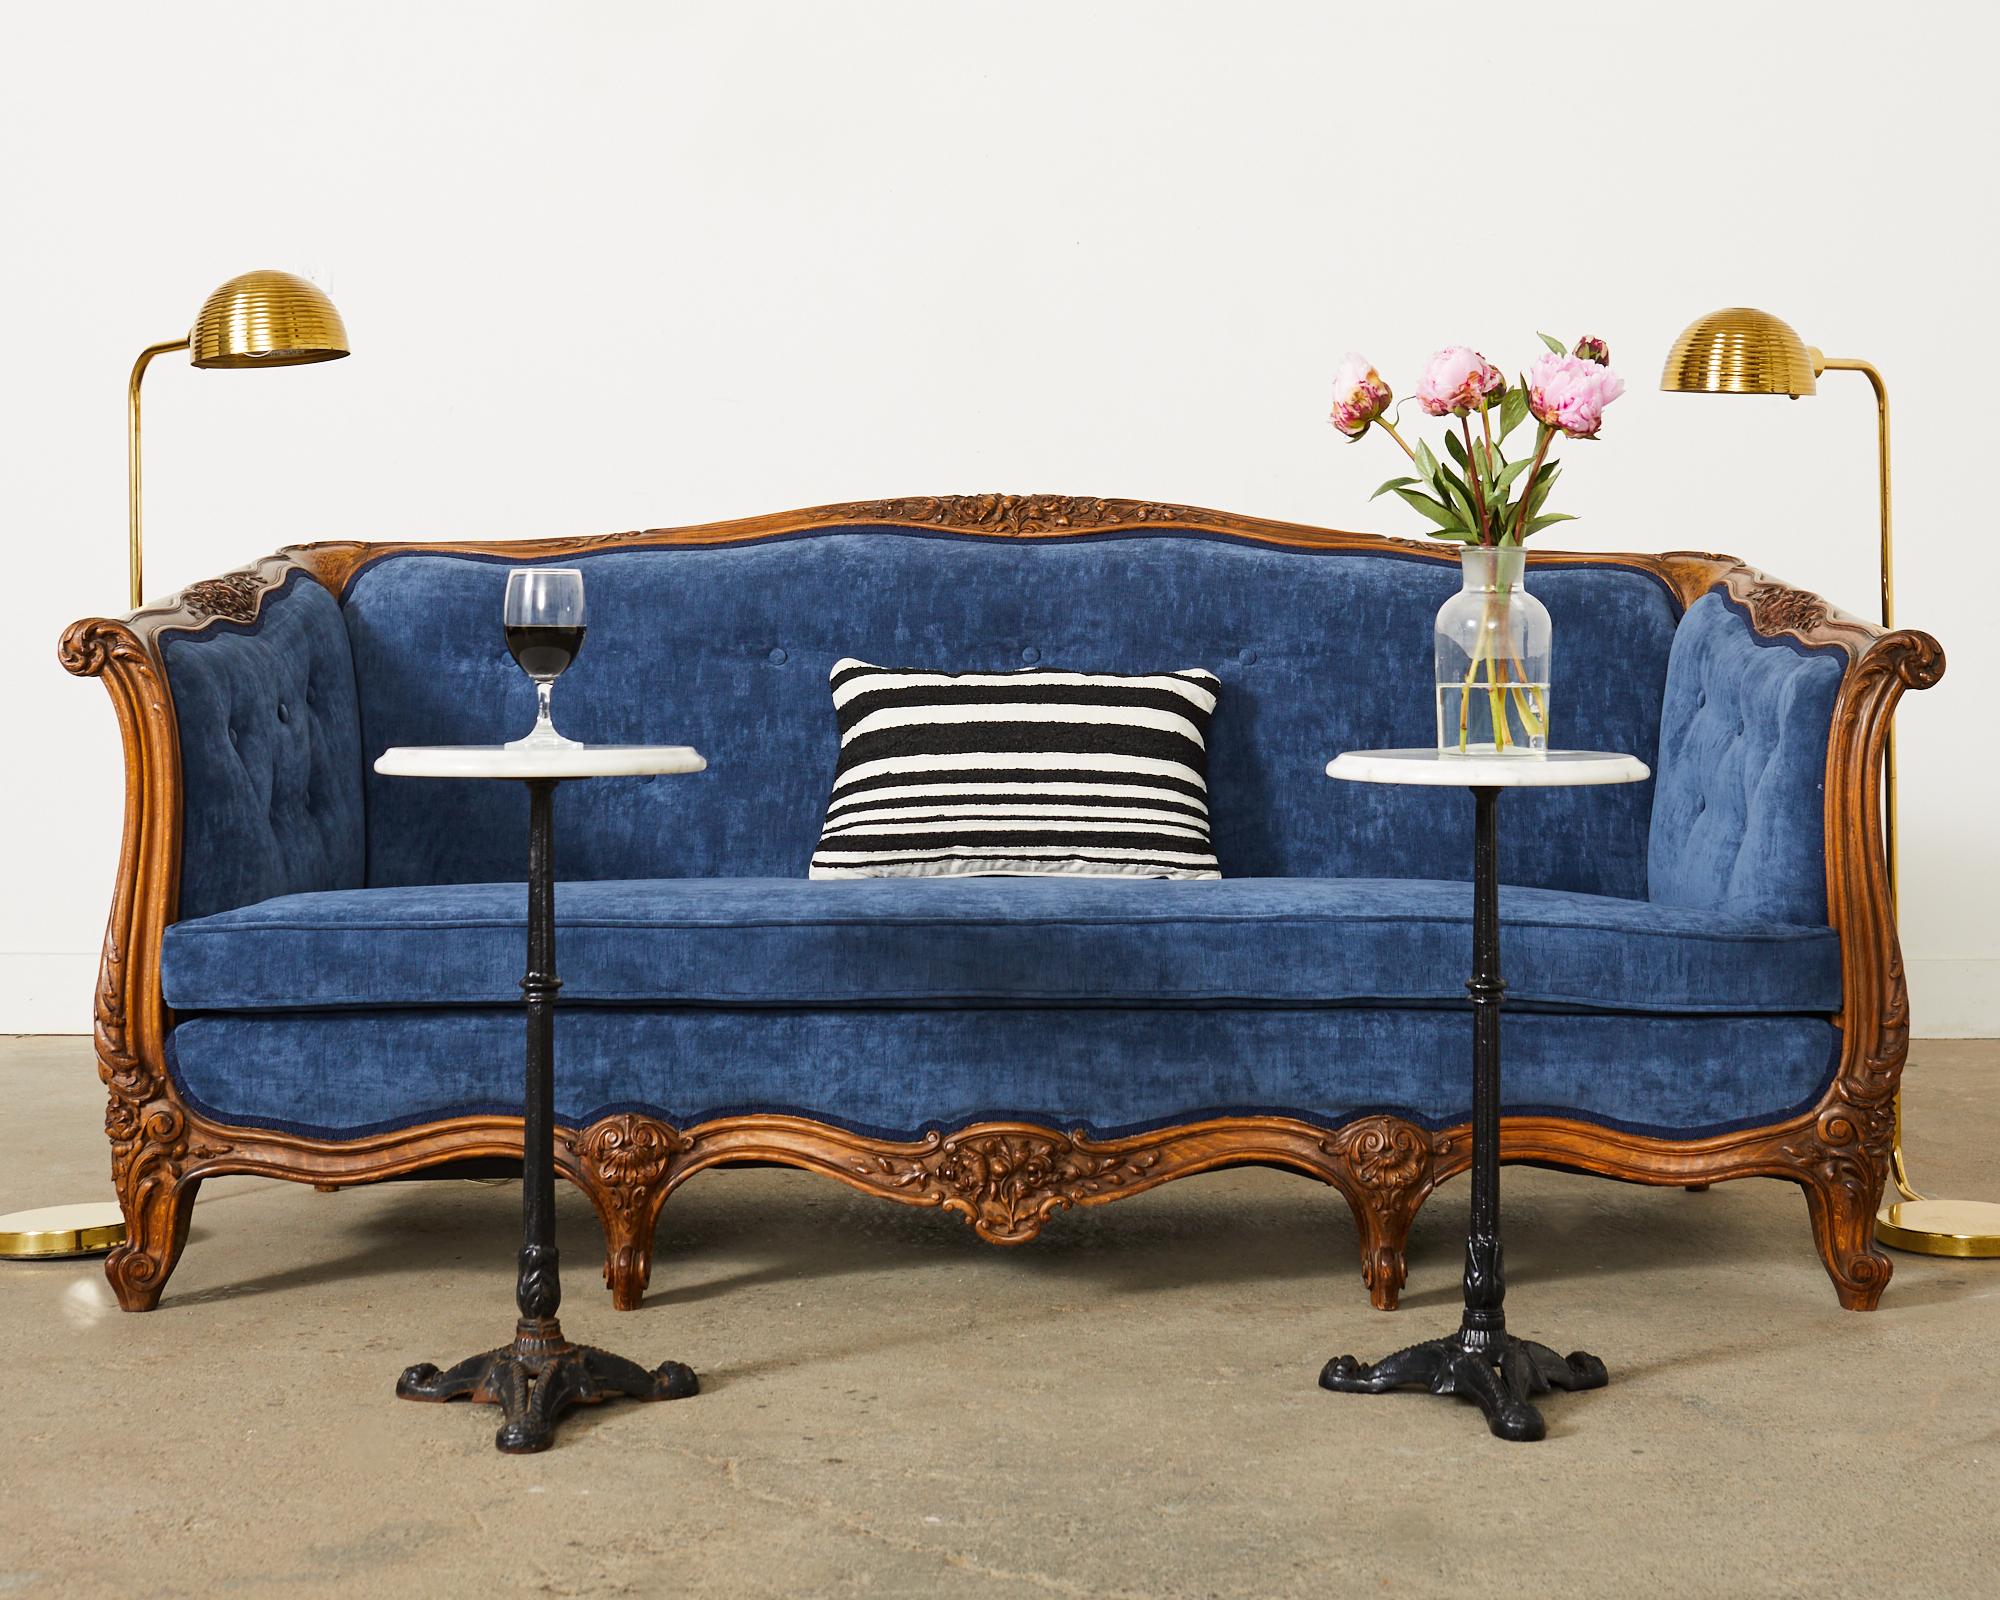 Opulent canapé ou sofa en noyer fabriqué dans le style provincial français ou Louis XV. Le canapé est doté d'un boîtier sculpté de manière élaborée avec des acanthes et des gerbes de fleurs. La structure est recouverte d'un superbe velours bleu